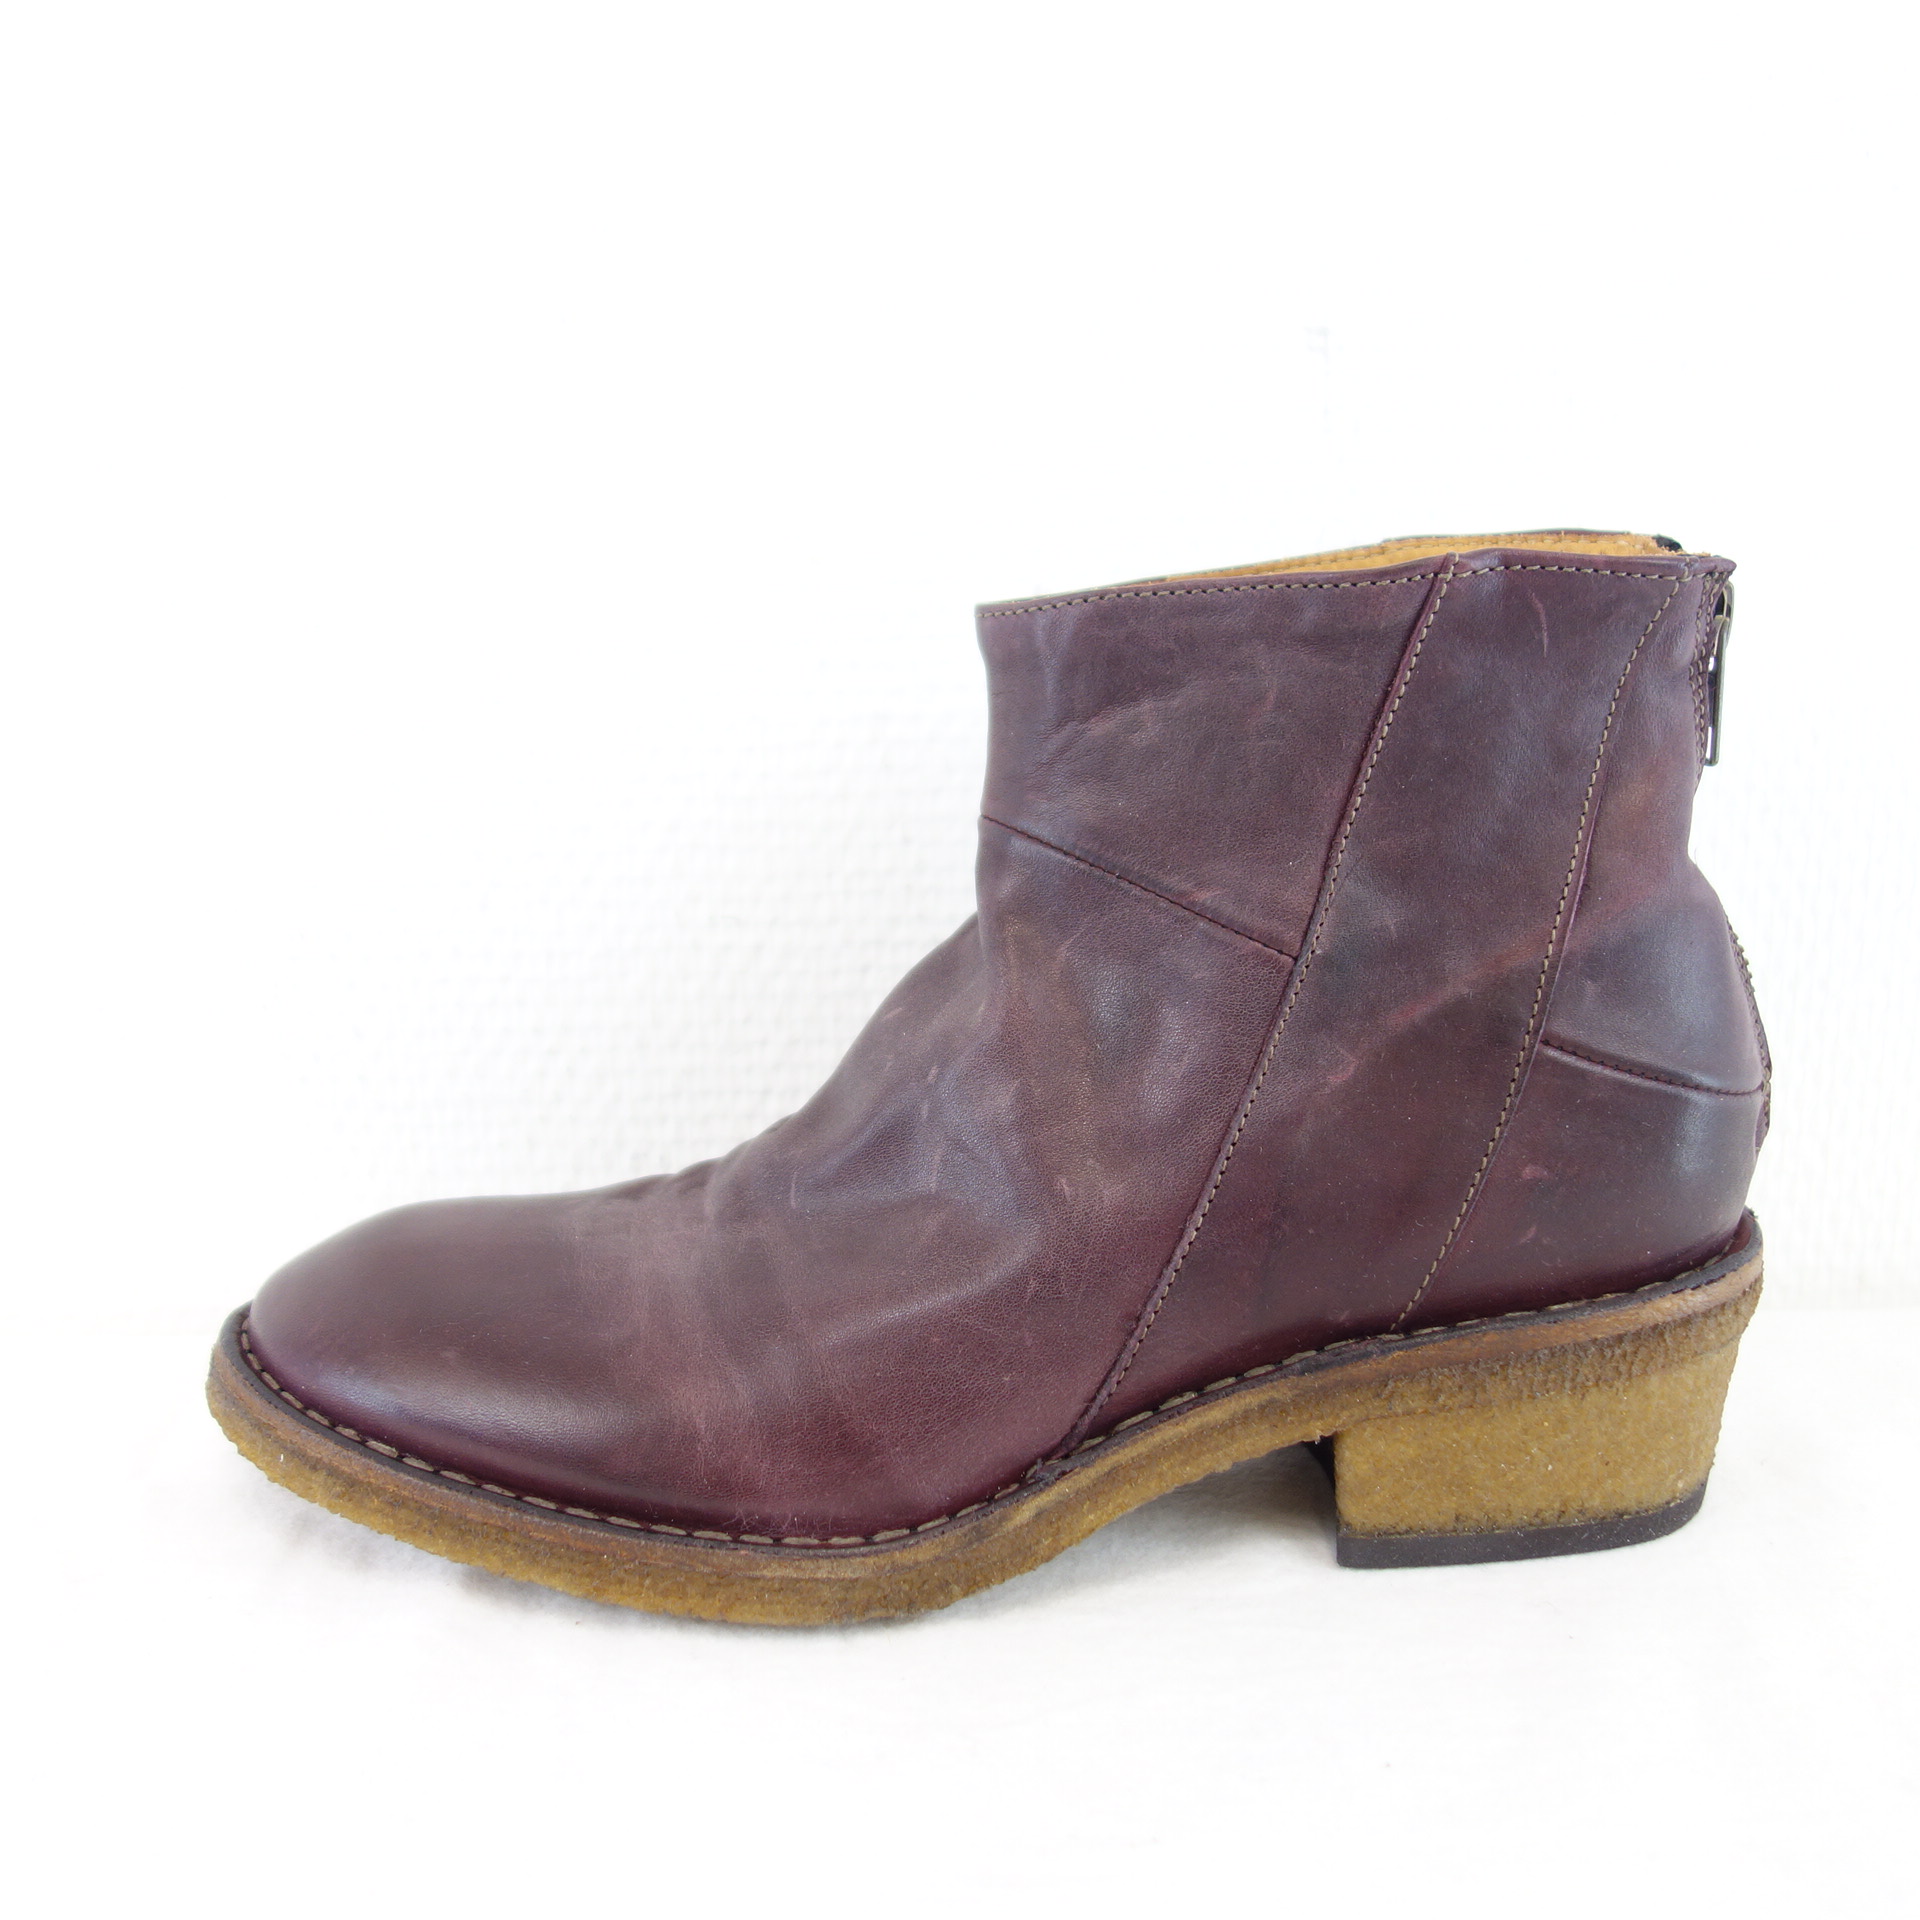 UIT ORMEDA UTTERLY ITALIAN TREND Damen Schuhe Stiefeletten Boots Stiefel Leder Bordeaux